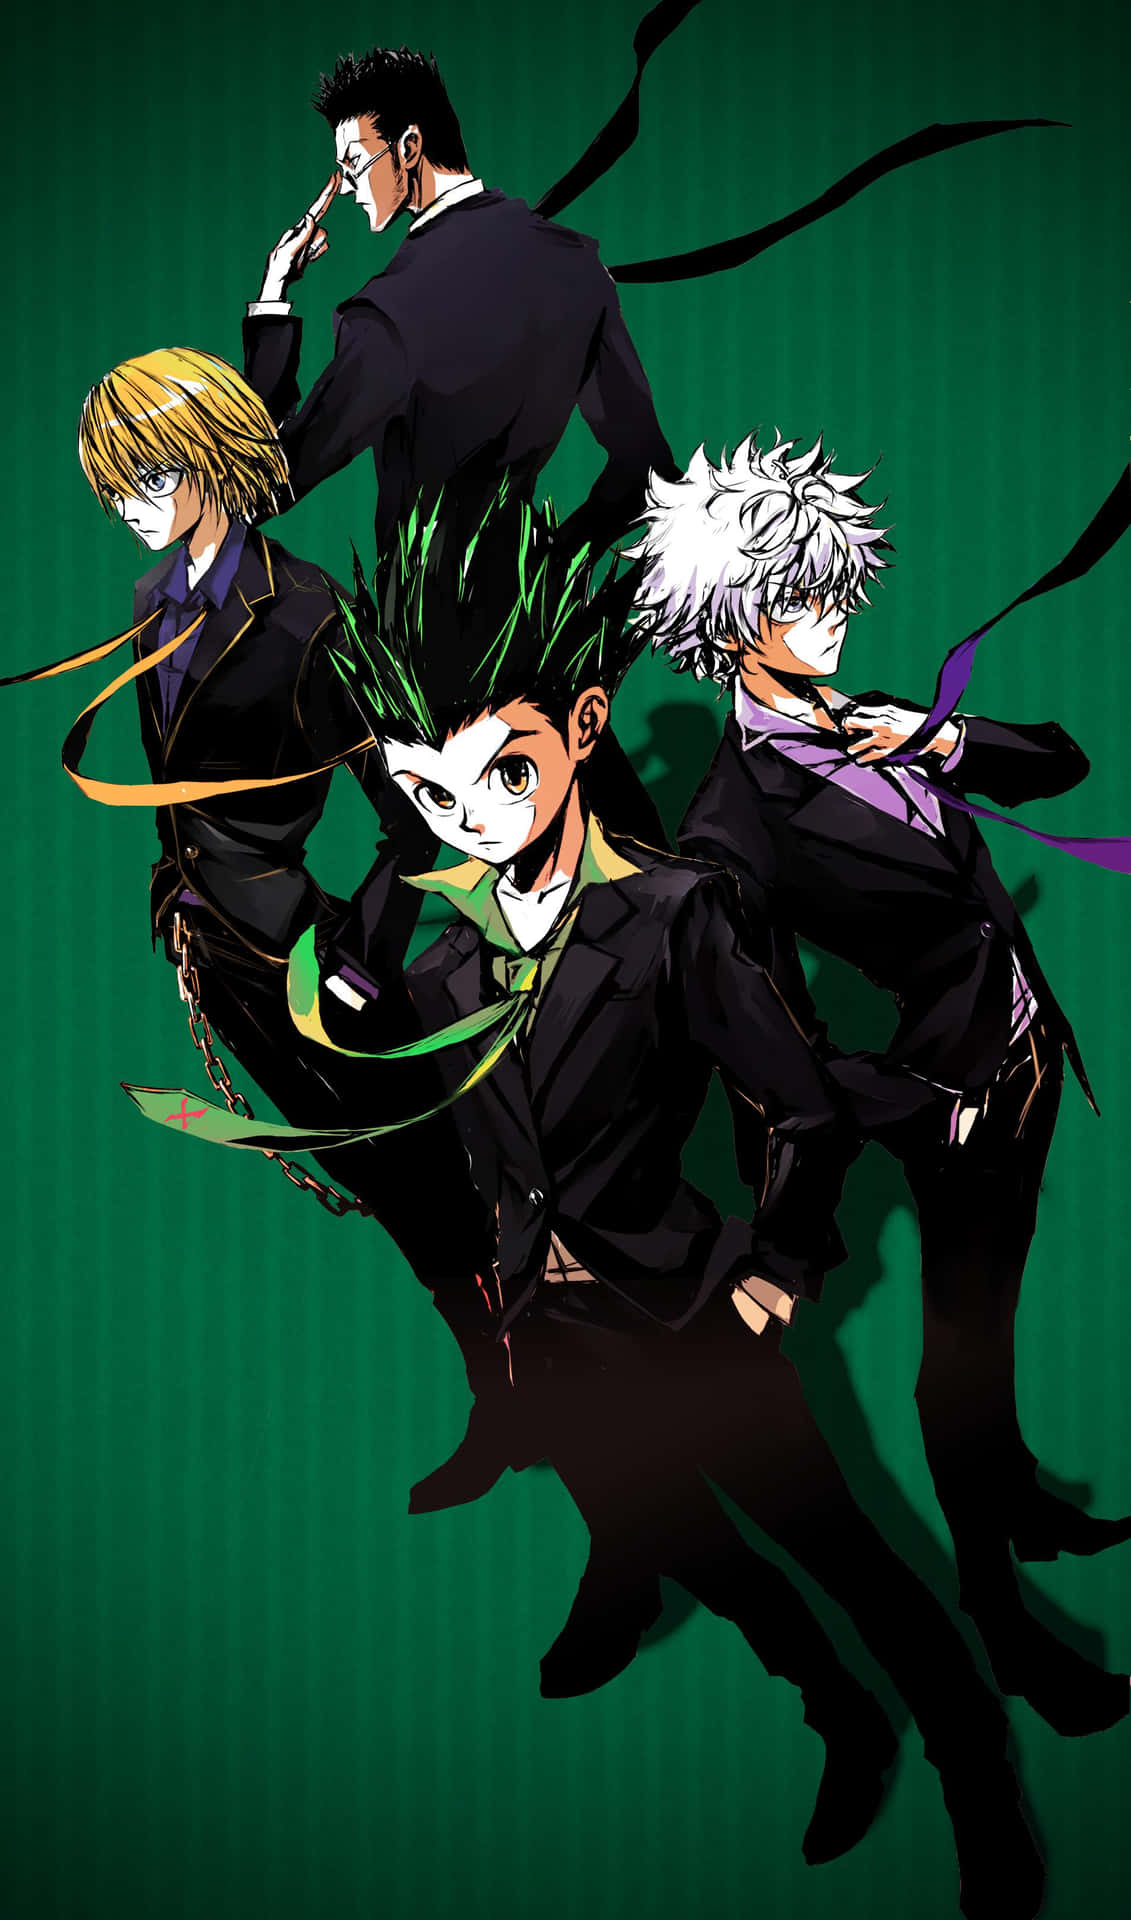 Einegruppe Anime-charaktere Steht Vor Einem Grünen Hintergrund. Wallpaper